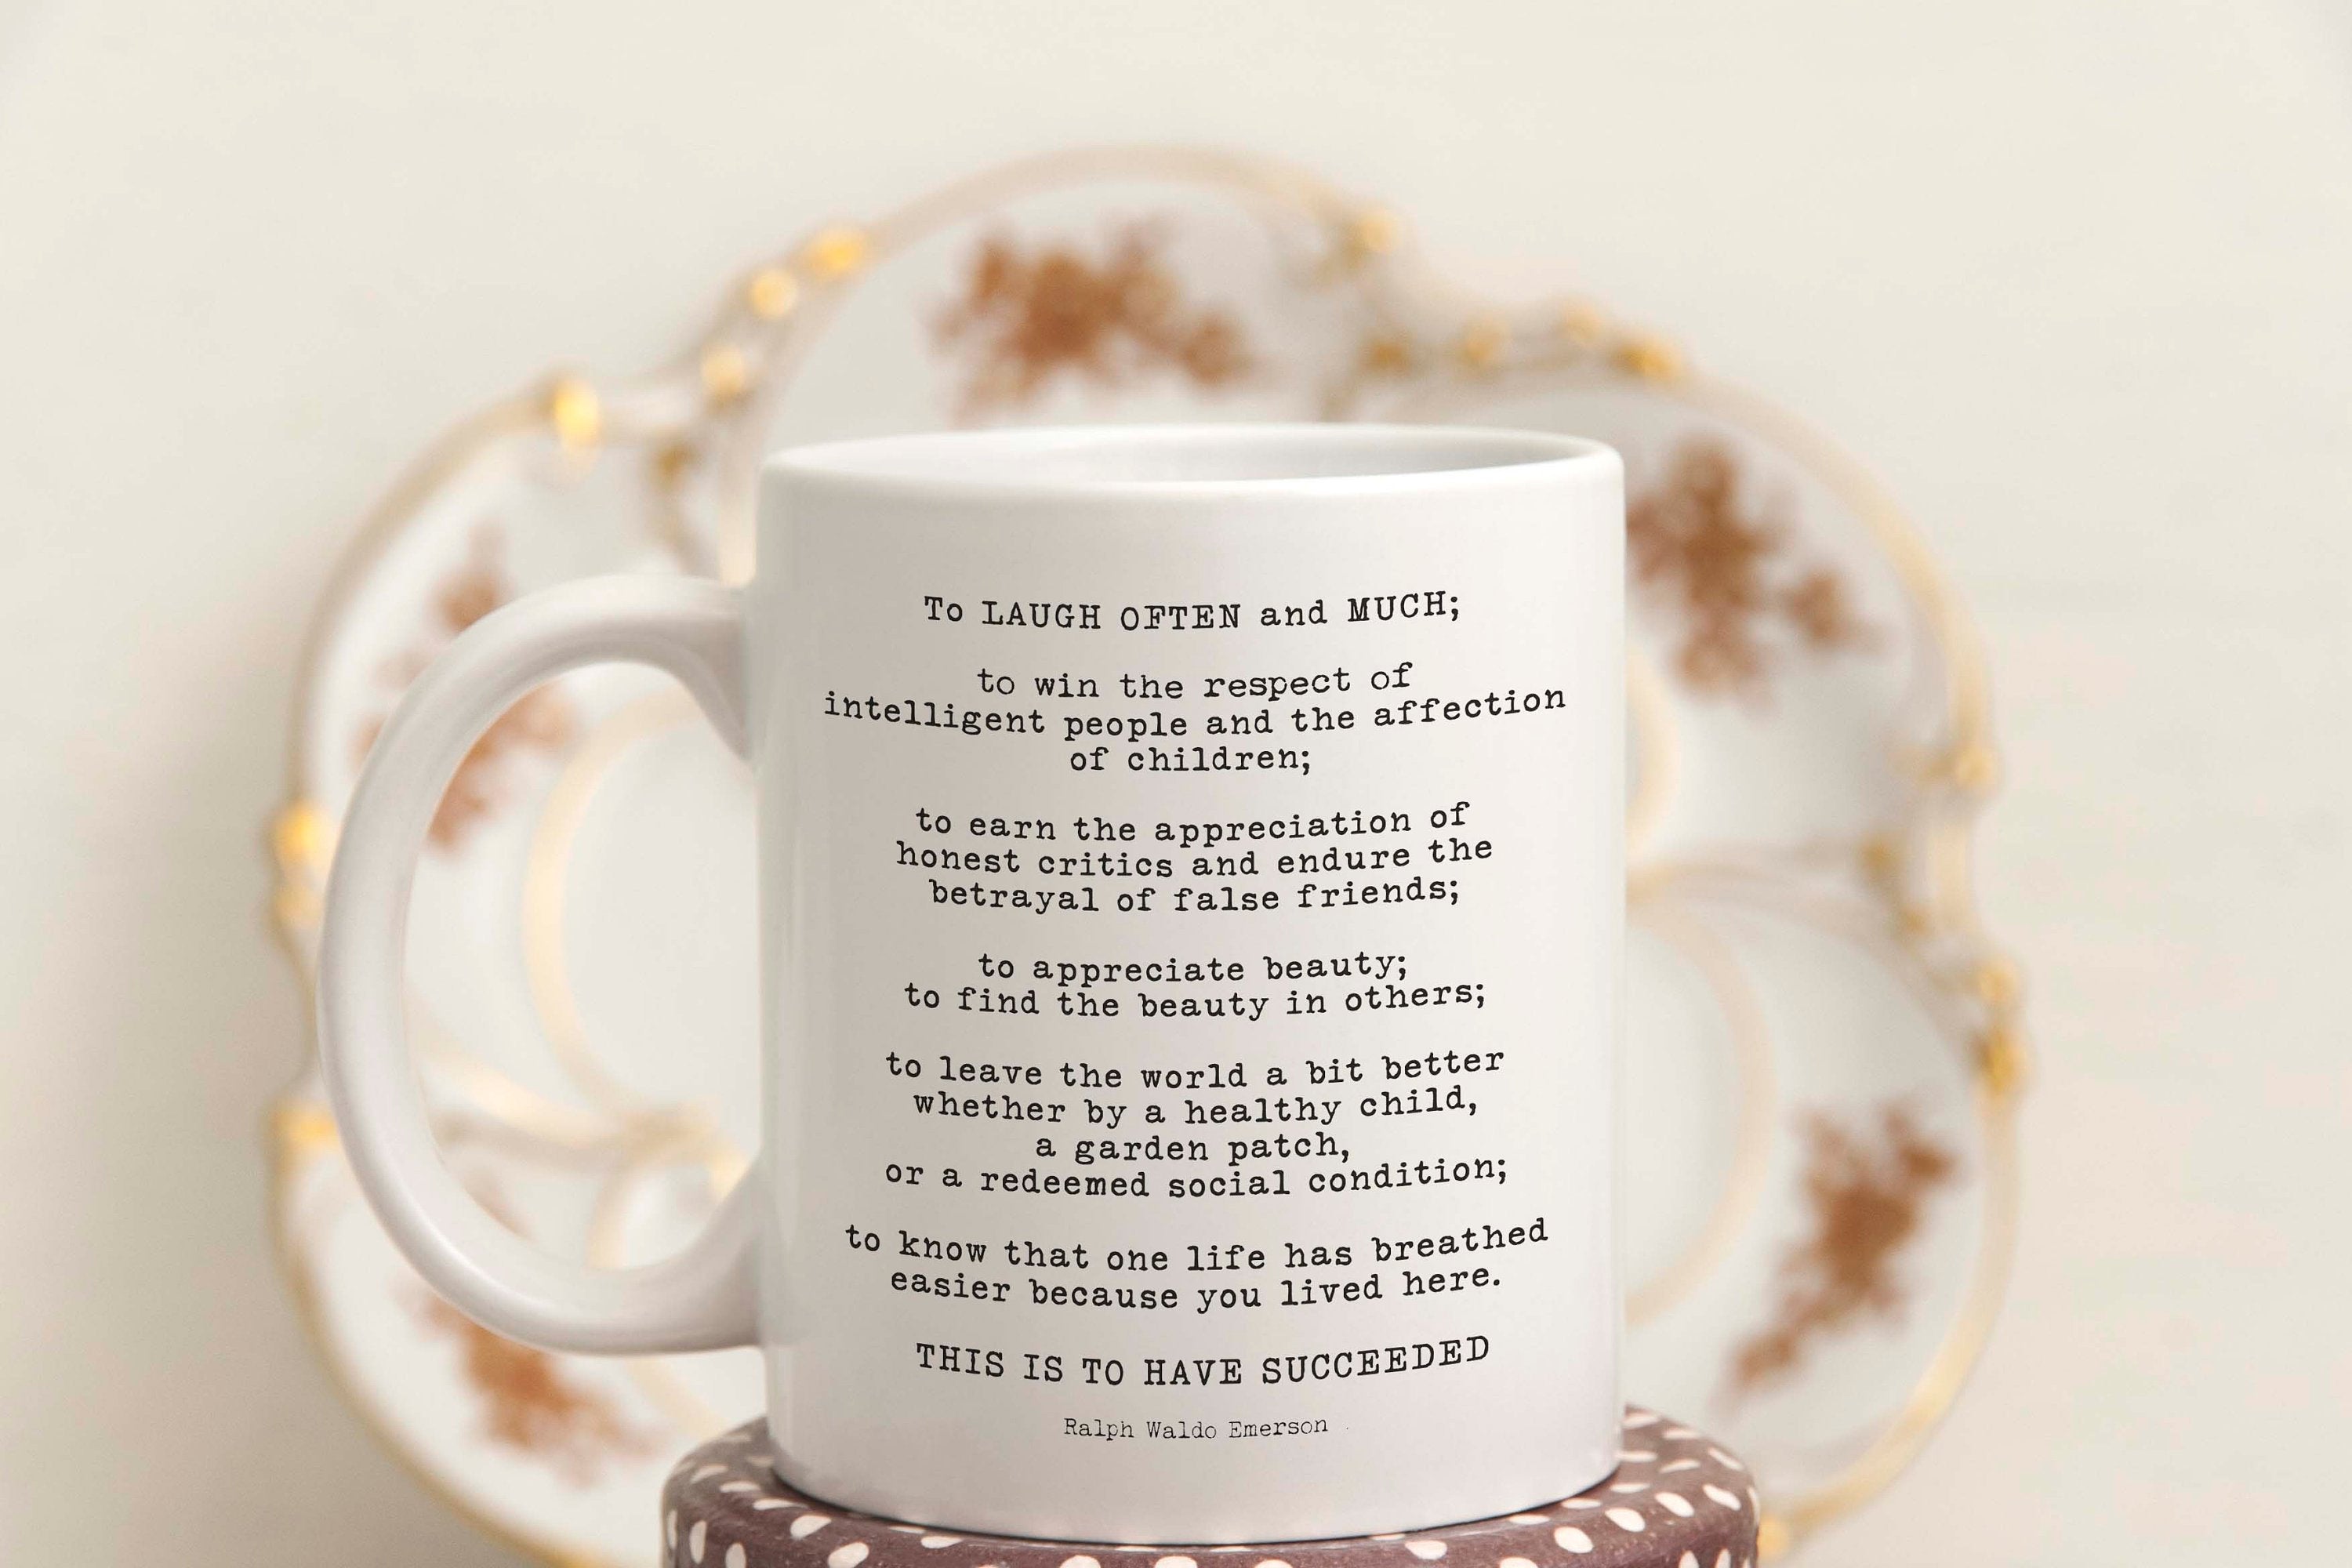 I do kind of have a coffee mug affection.